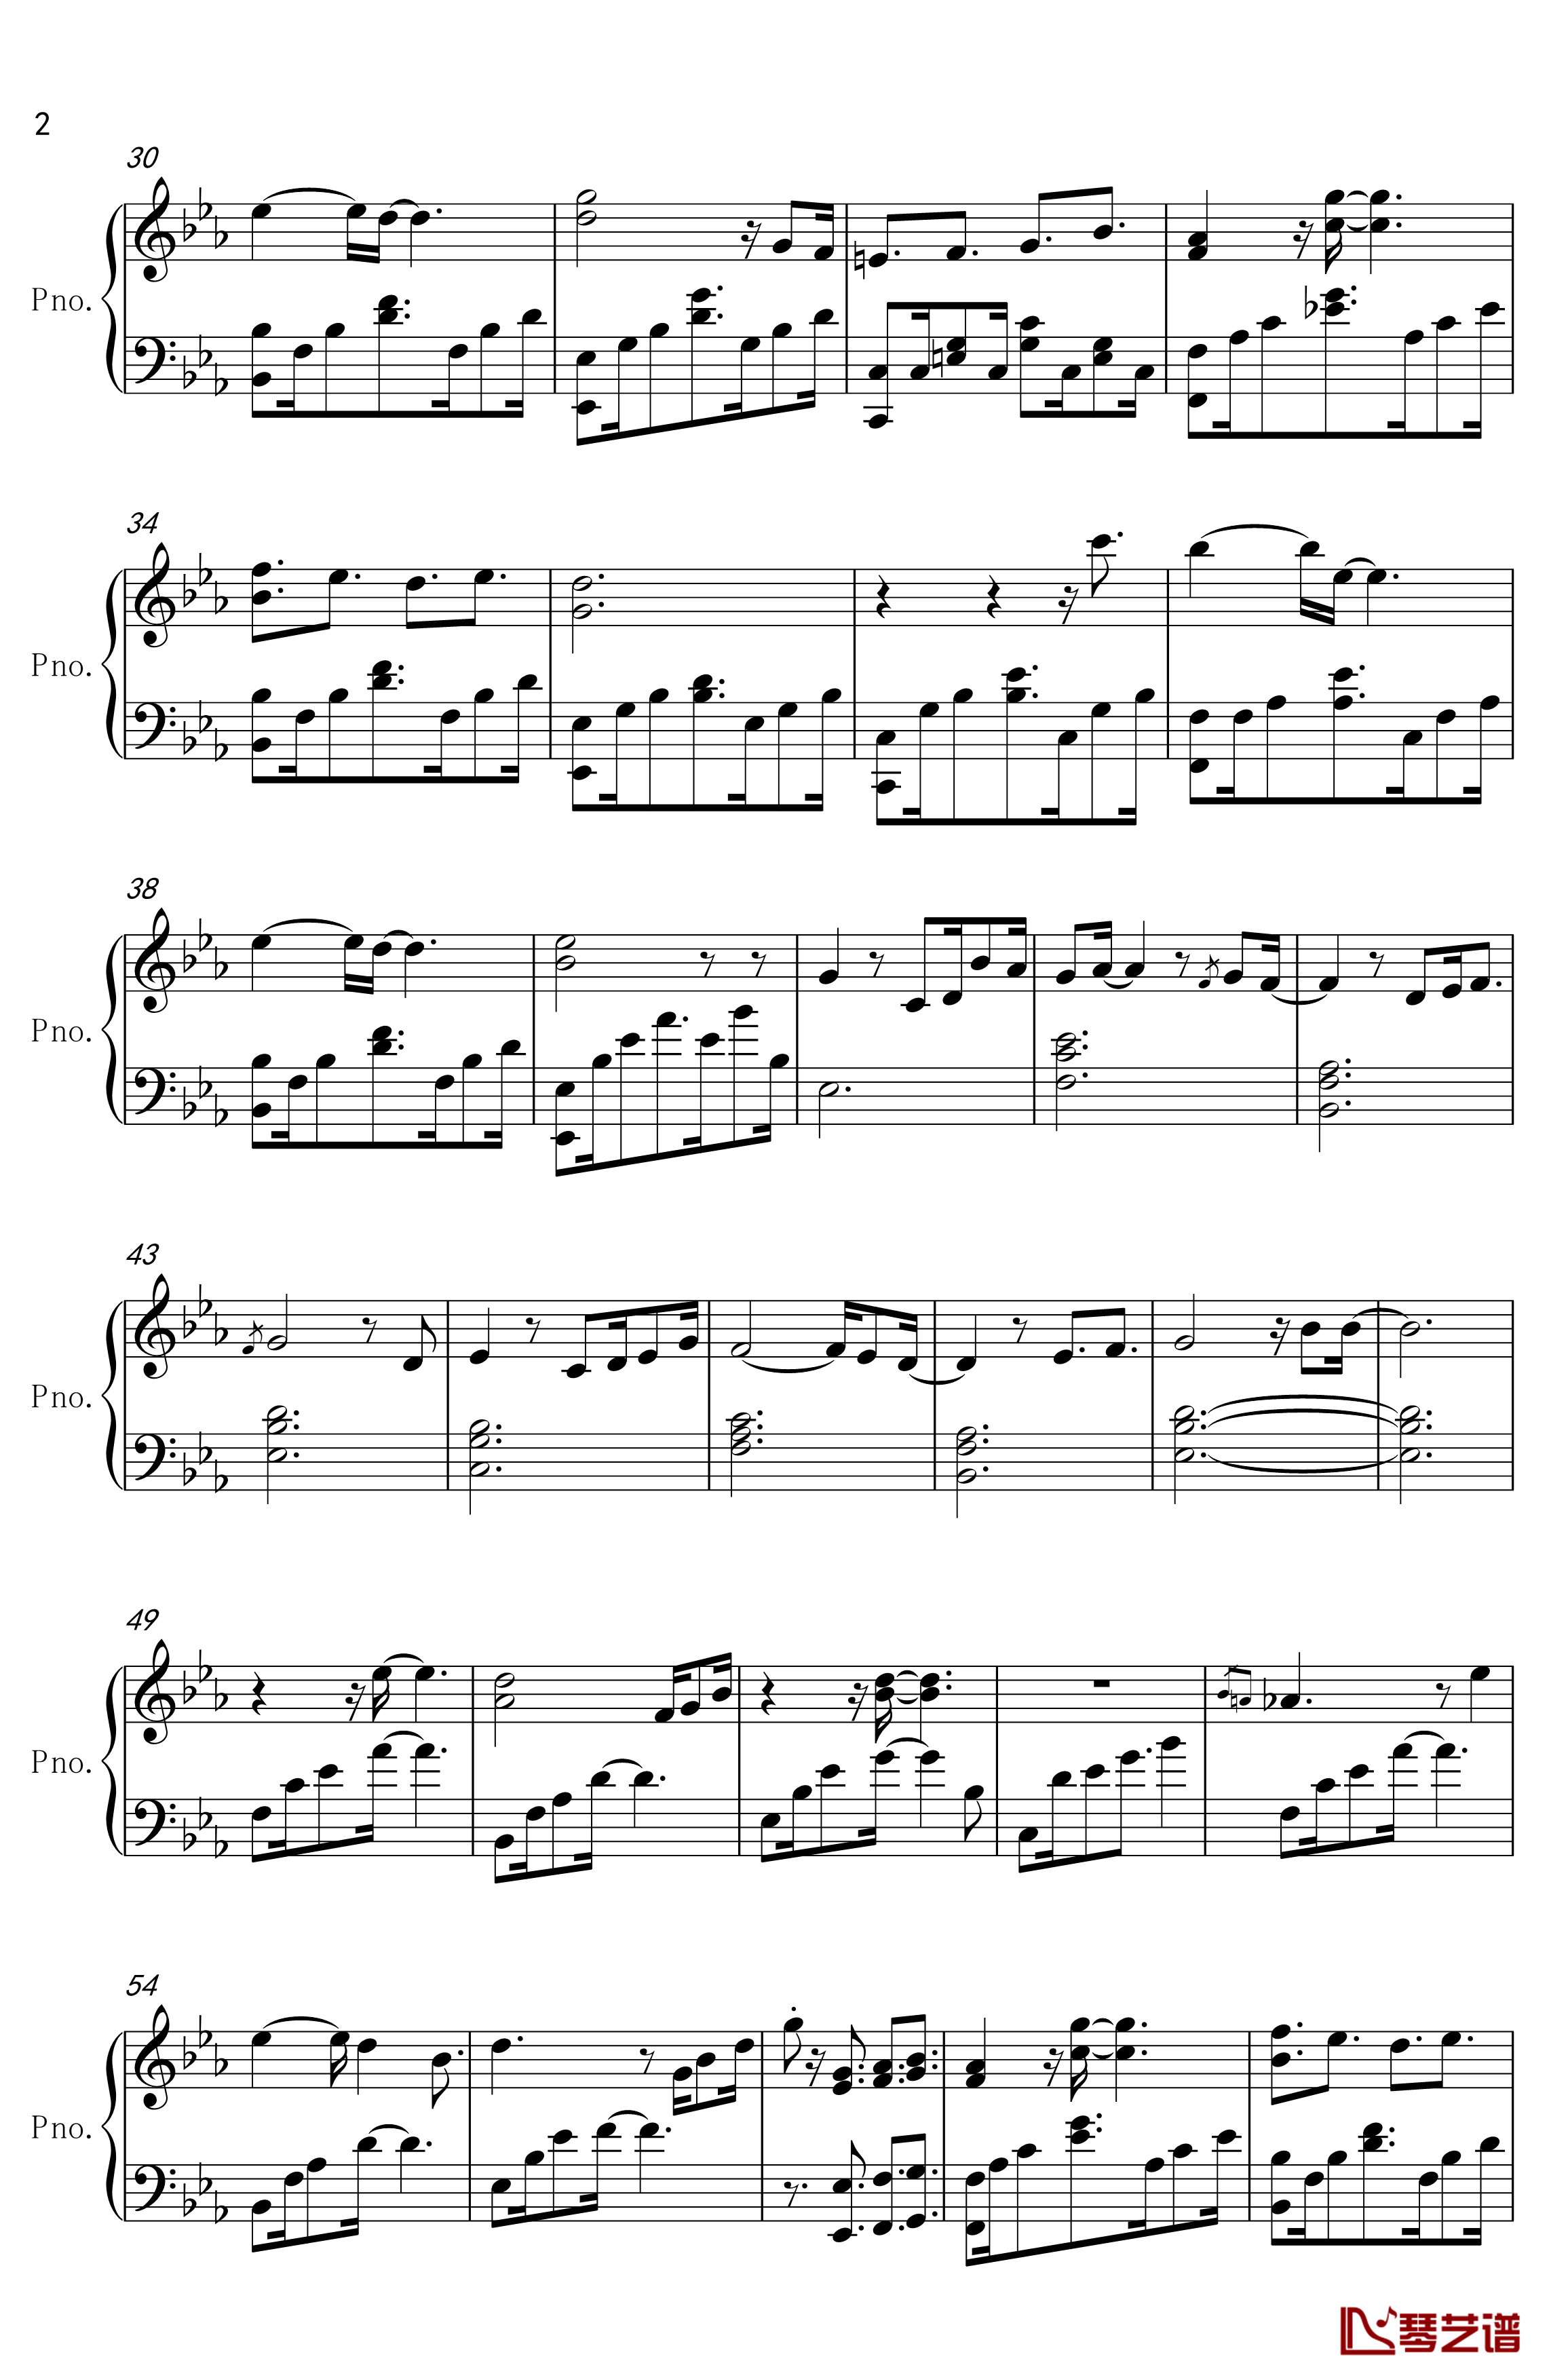 舒伯特玫瑰钢琴谱-钢琴伴奏版-蓝心羽2